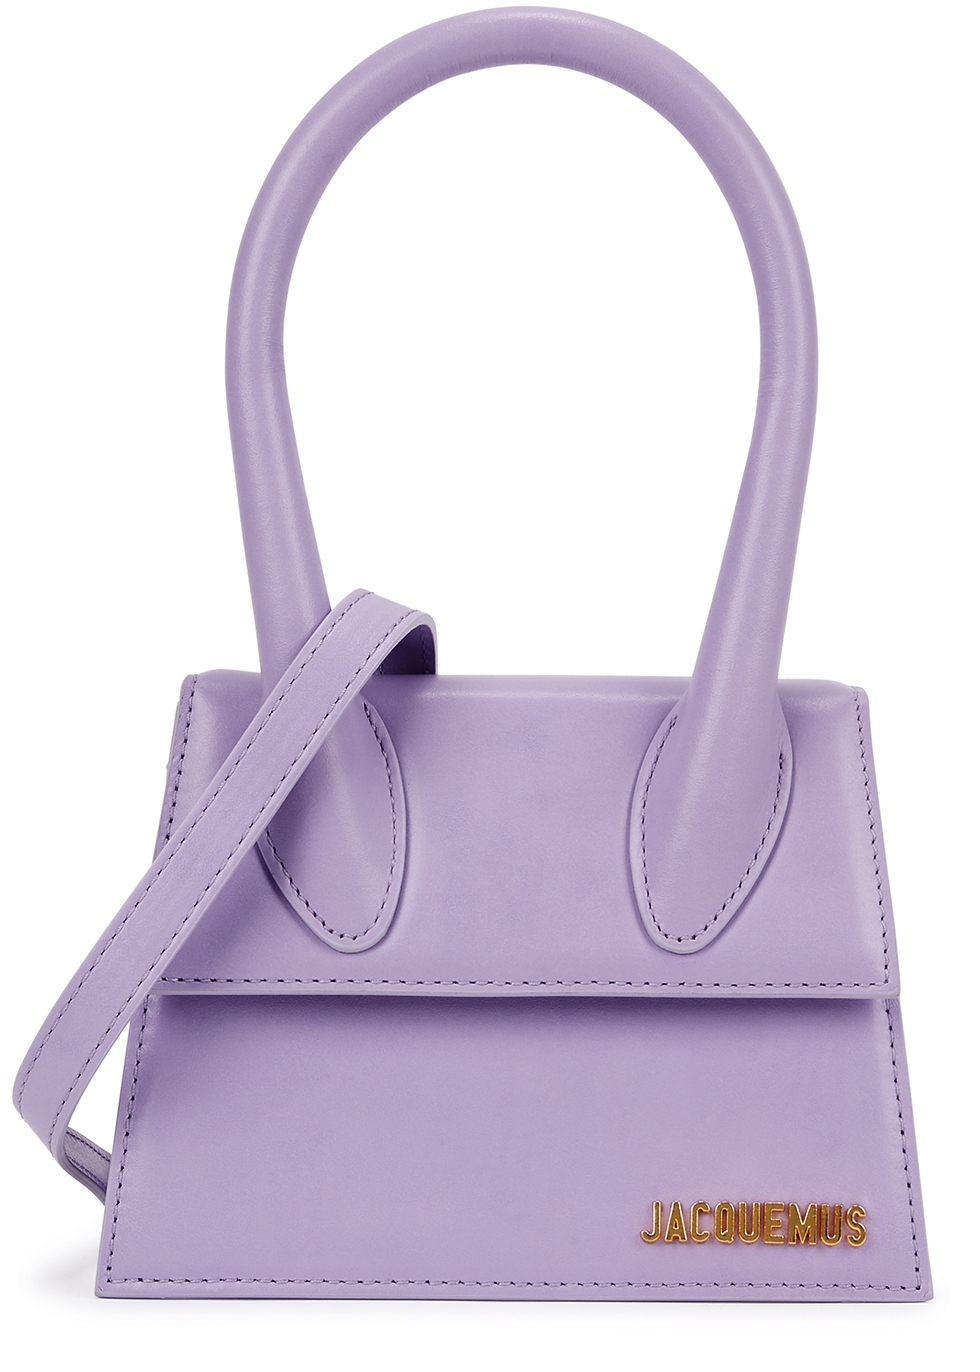 Jacquemus Le Chiquito Moyen lilac top handle bag - Harvey Nichols